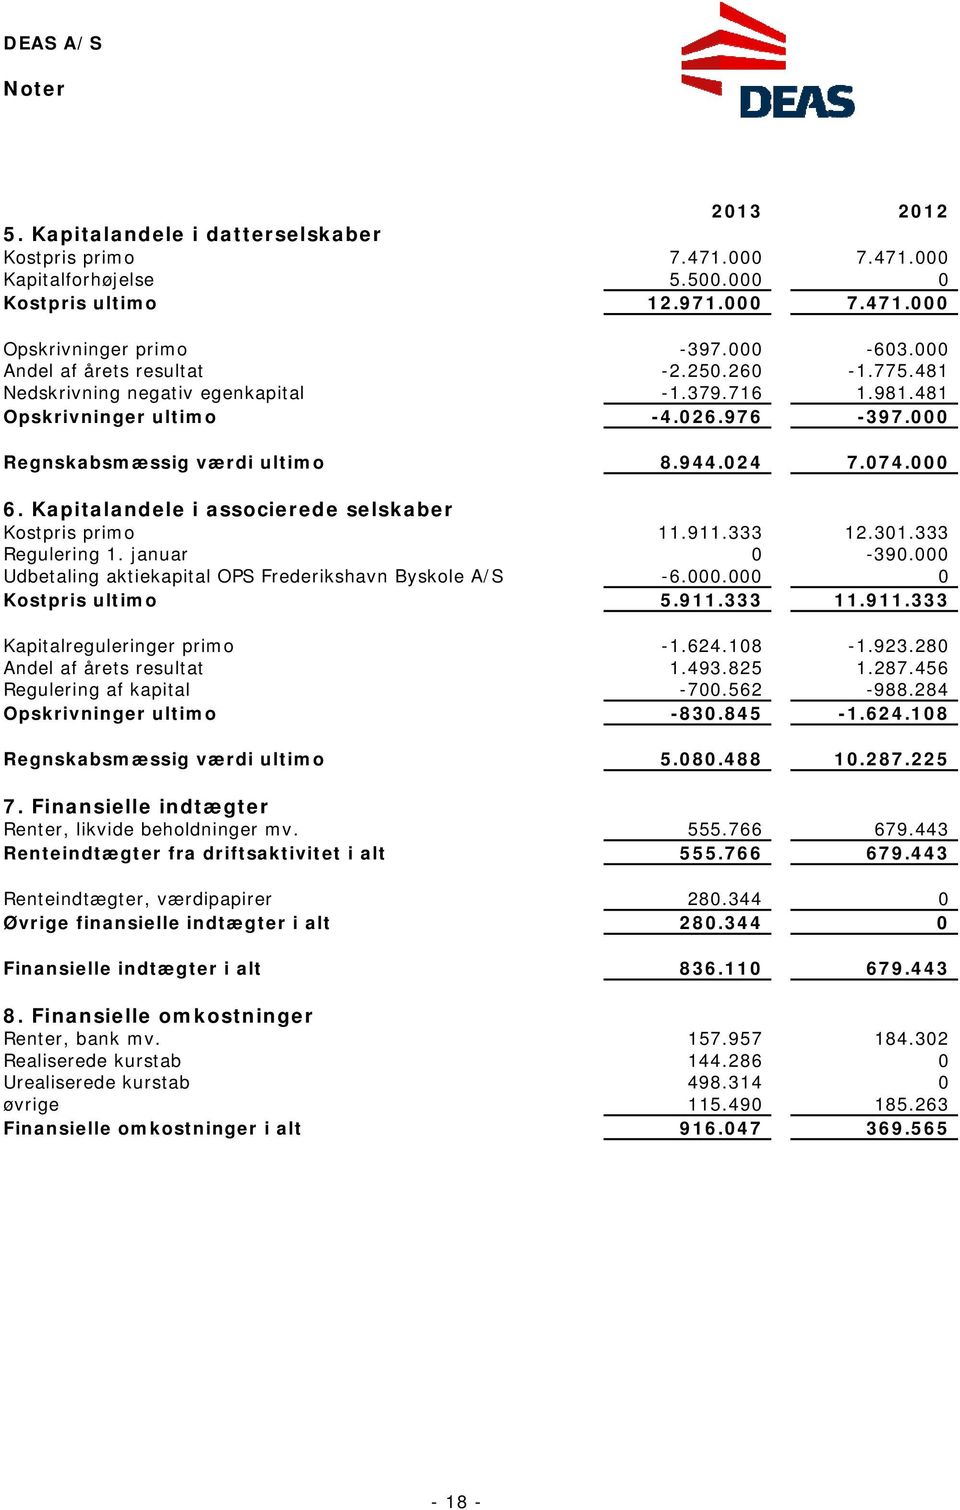 Kapitalandele i associerede selskaber Kostpris primo 11.911.333 12.301.333 Regulering 1. januar 0-390.000 Udbetaling aktiekapital OPS Frederikshavn Byskole A/S -6.000.000 0 Kostpris ultimo 5.911.333 11.